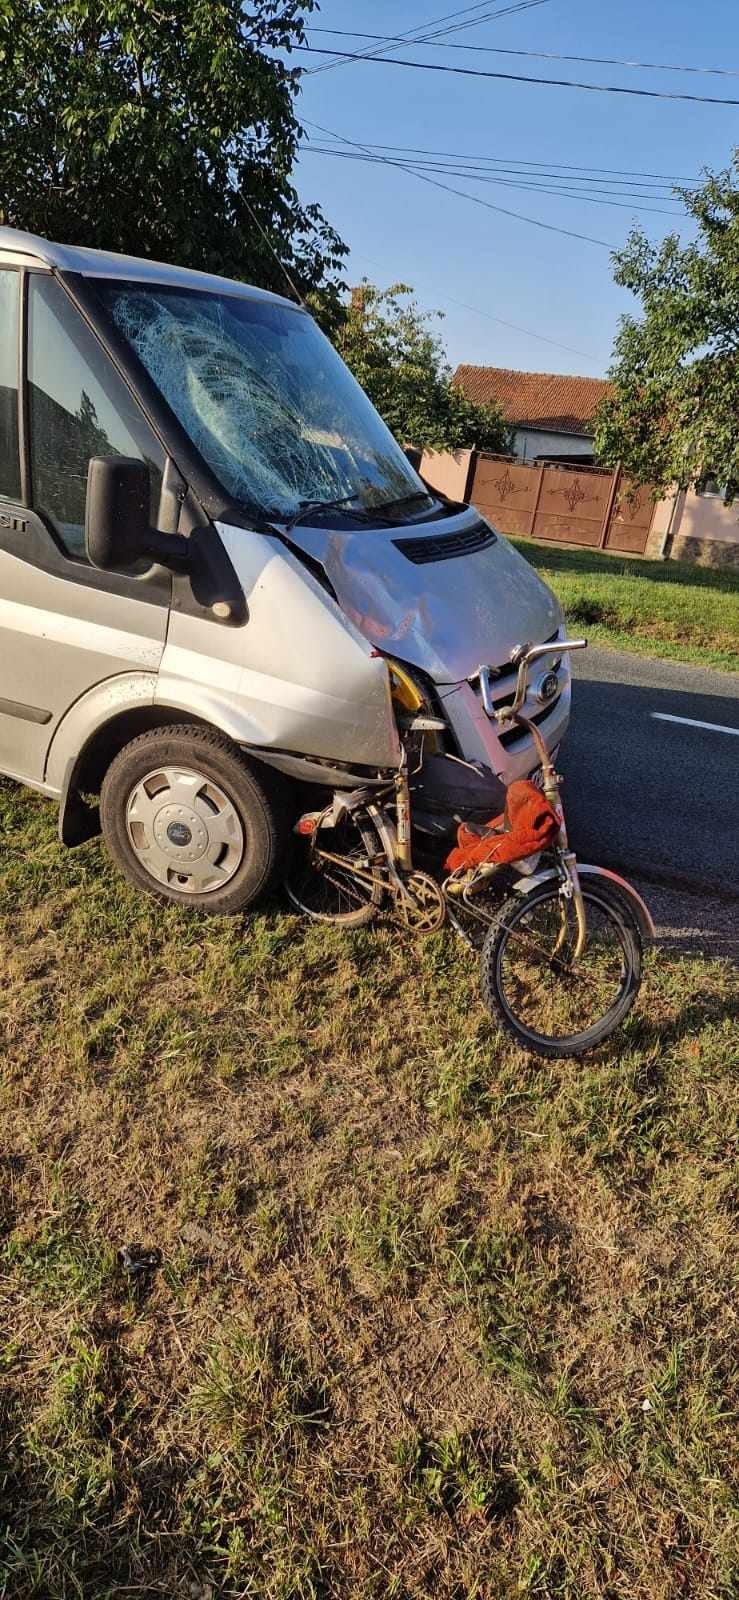 (FOTO) Accident mortal între Aluniș și Zăbrani / UPDATE: Dosar penal pentru ucidere din culpă pe numele șoferului